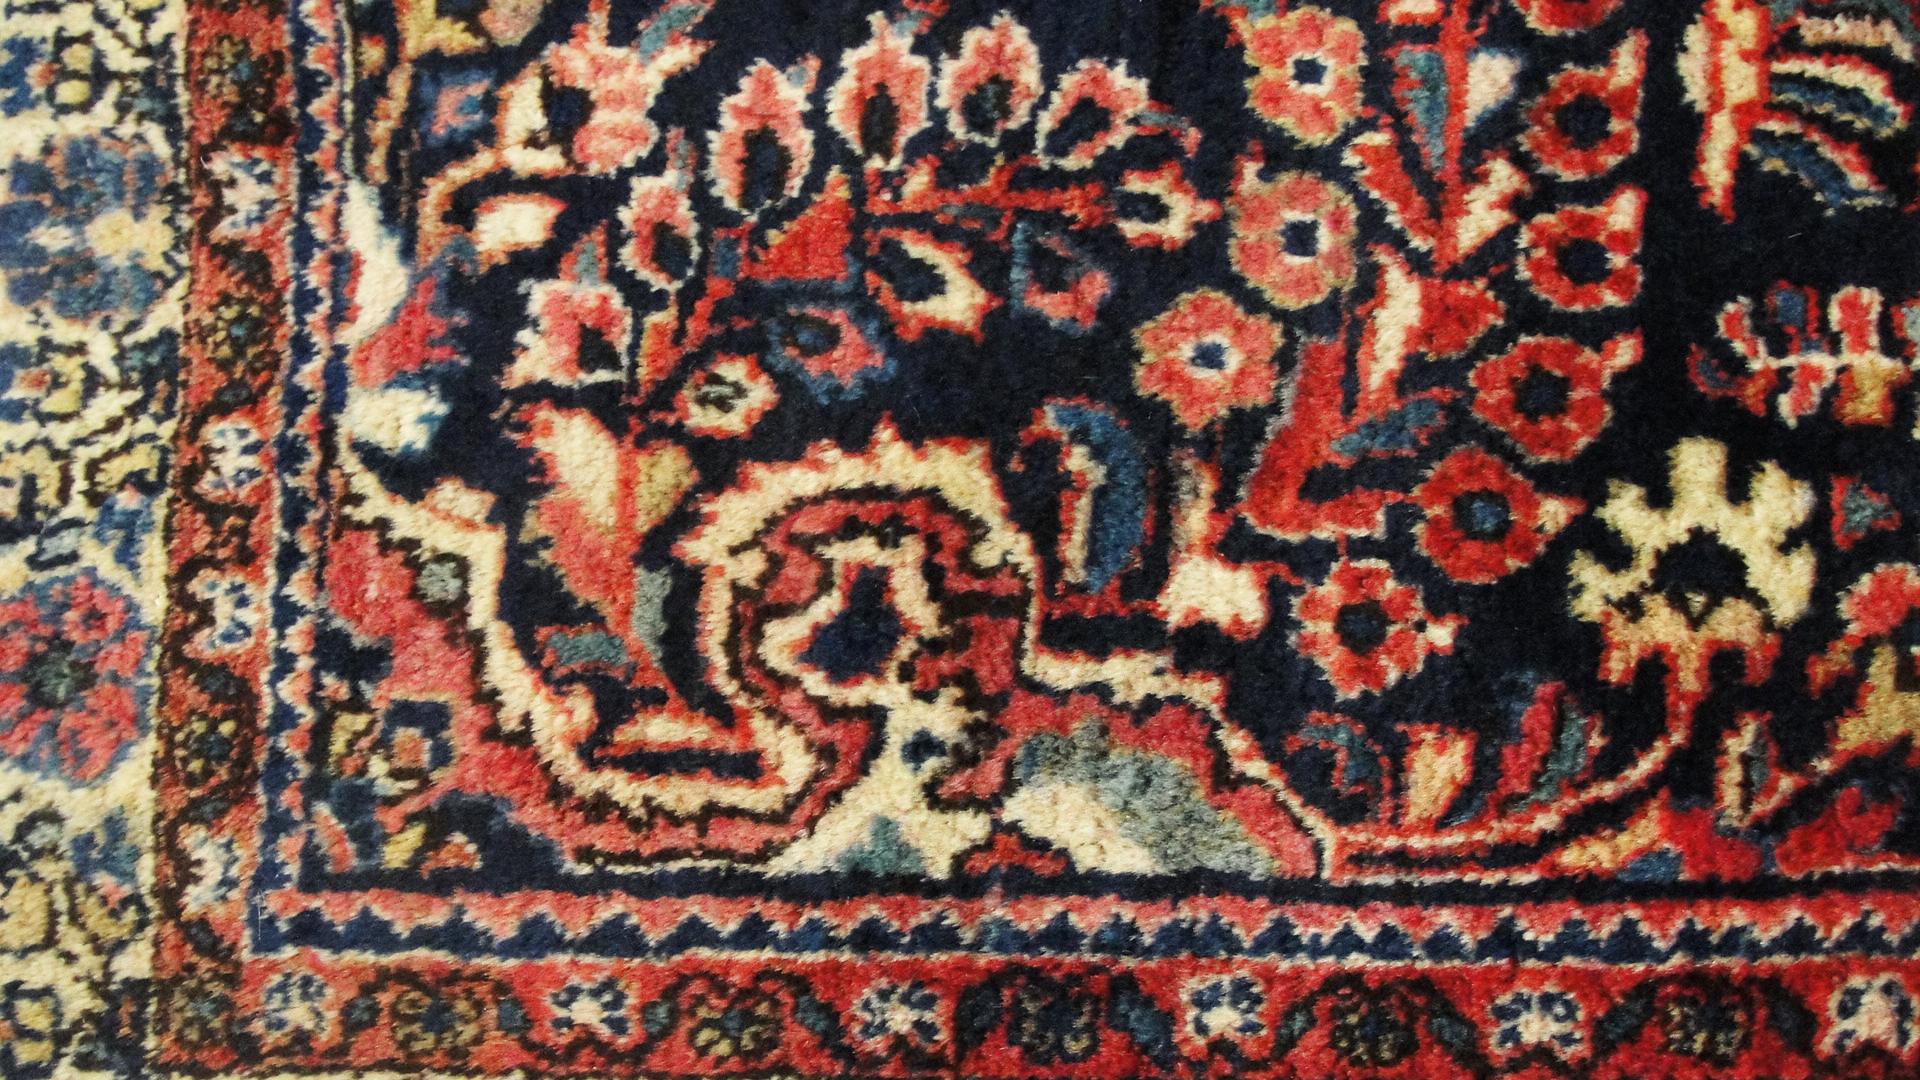 20th Century Antique Persian Sarouk Rug